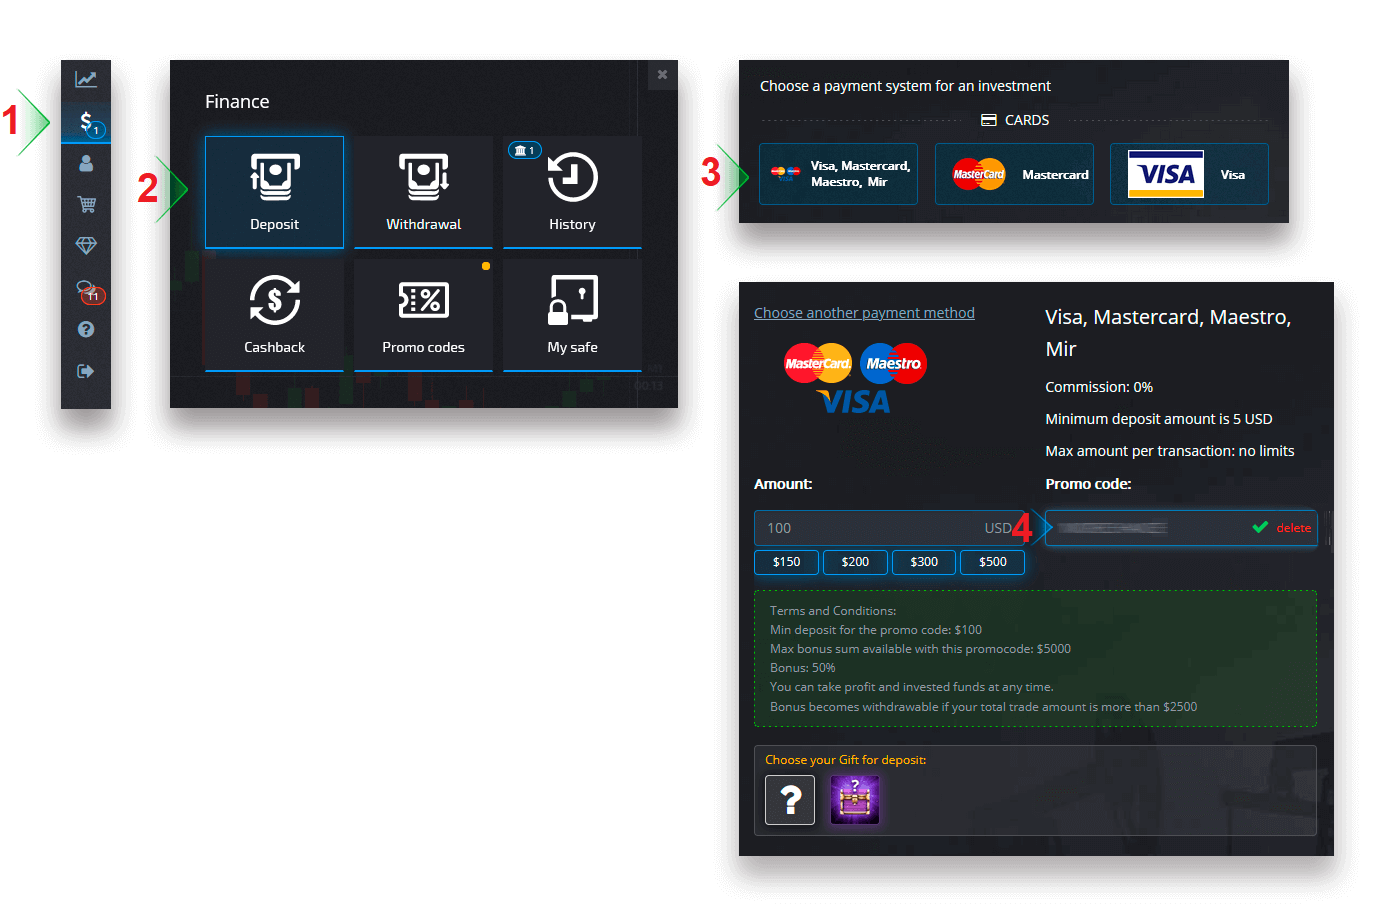 Come accedere e depositare denaro in Pocket Option